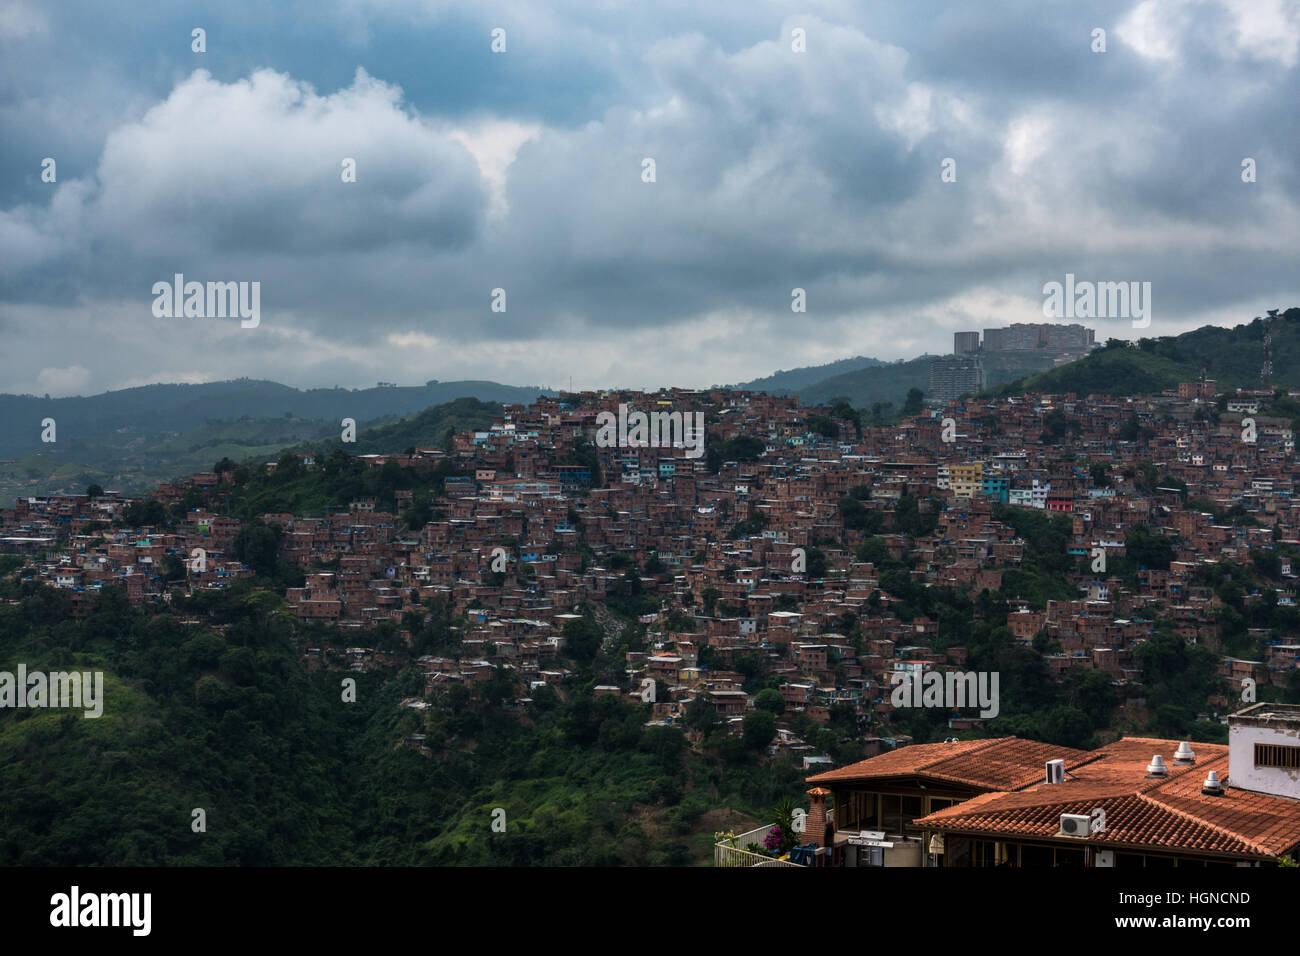 Barrios, slums of Caracas on the hillside, Caracas, Venezuela Stock Photo